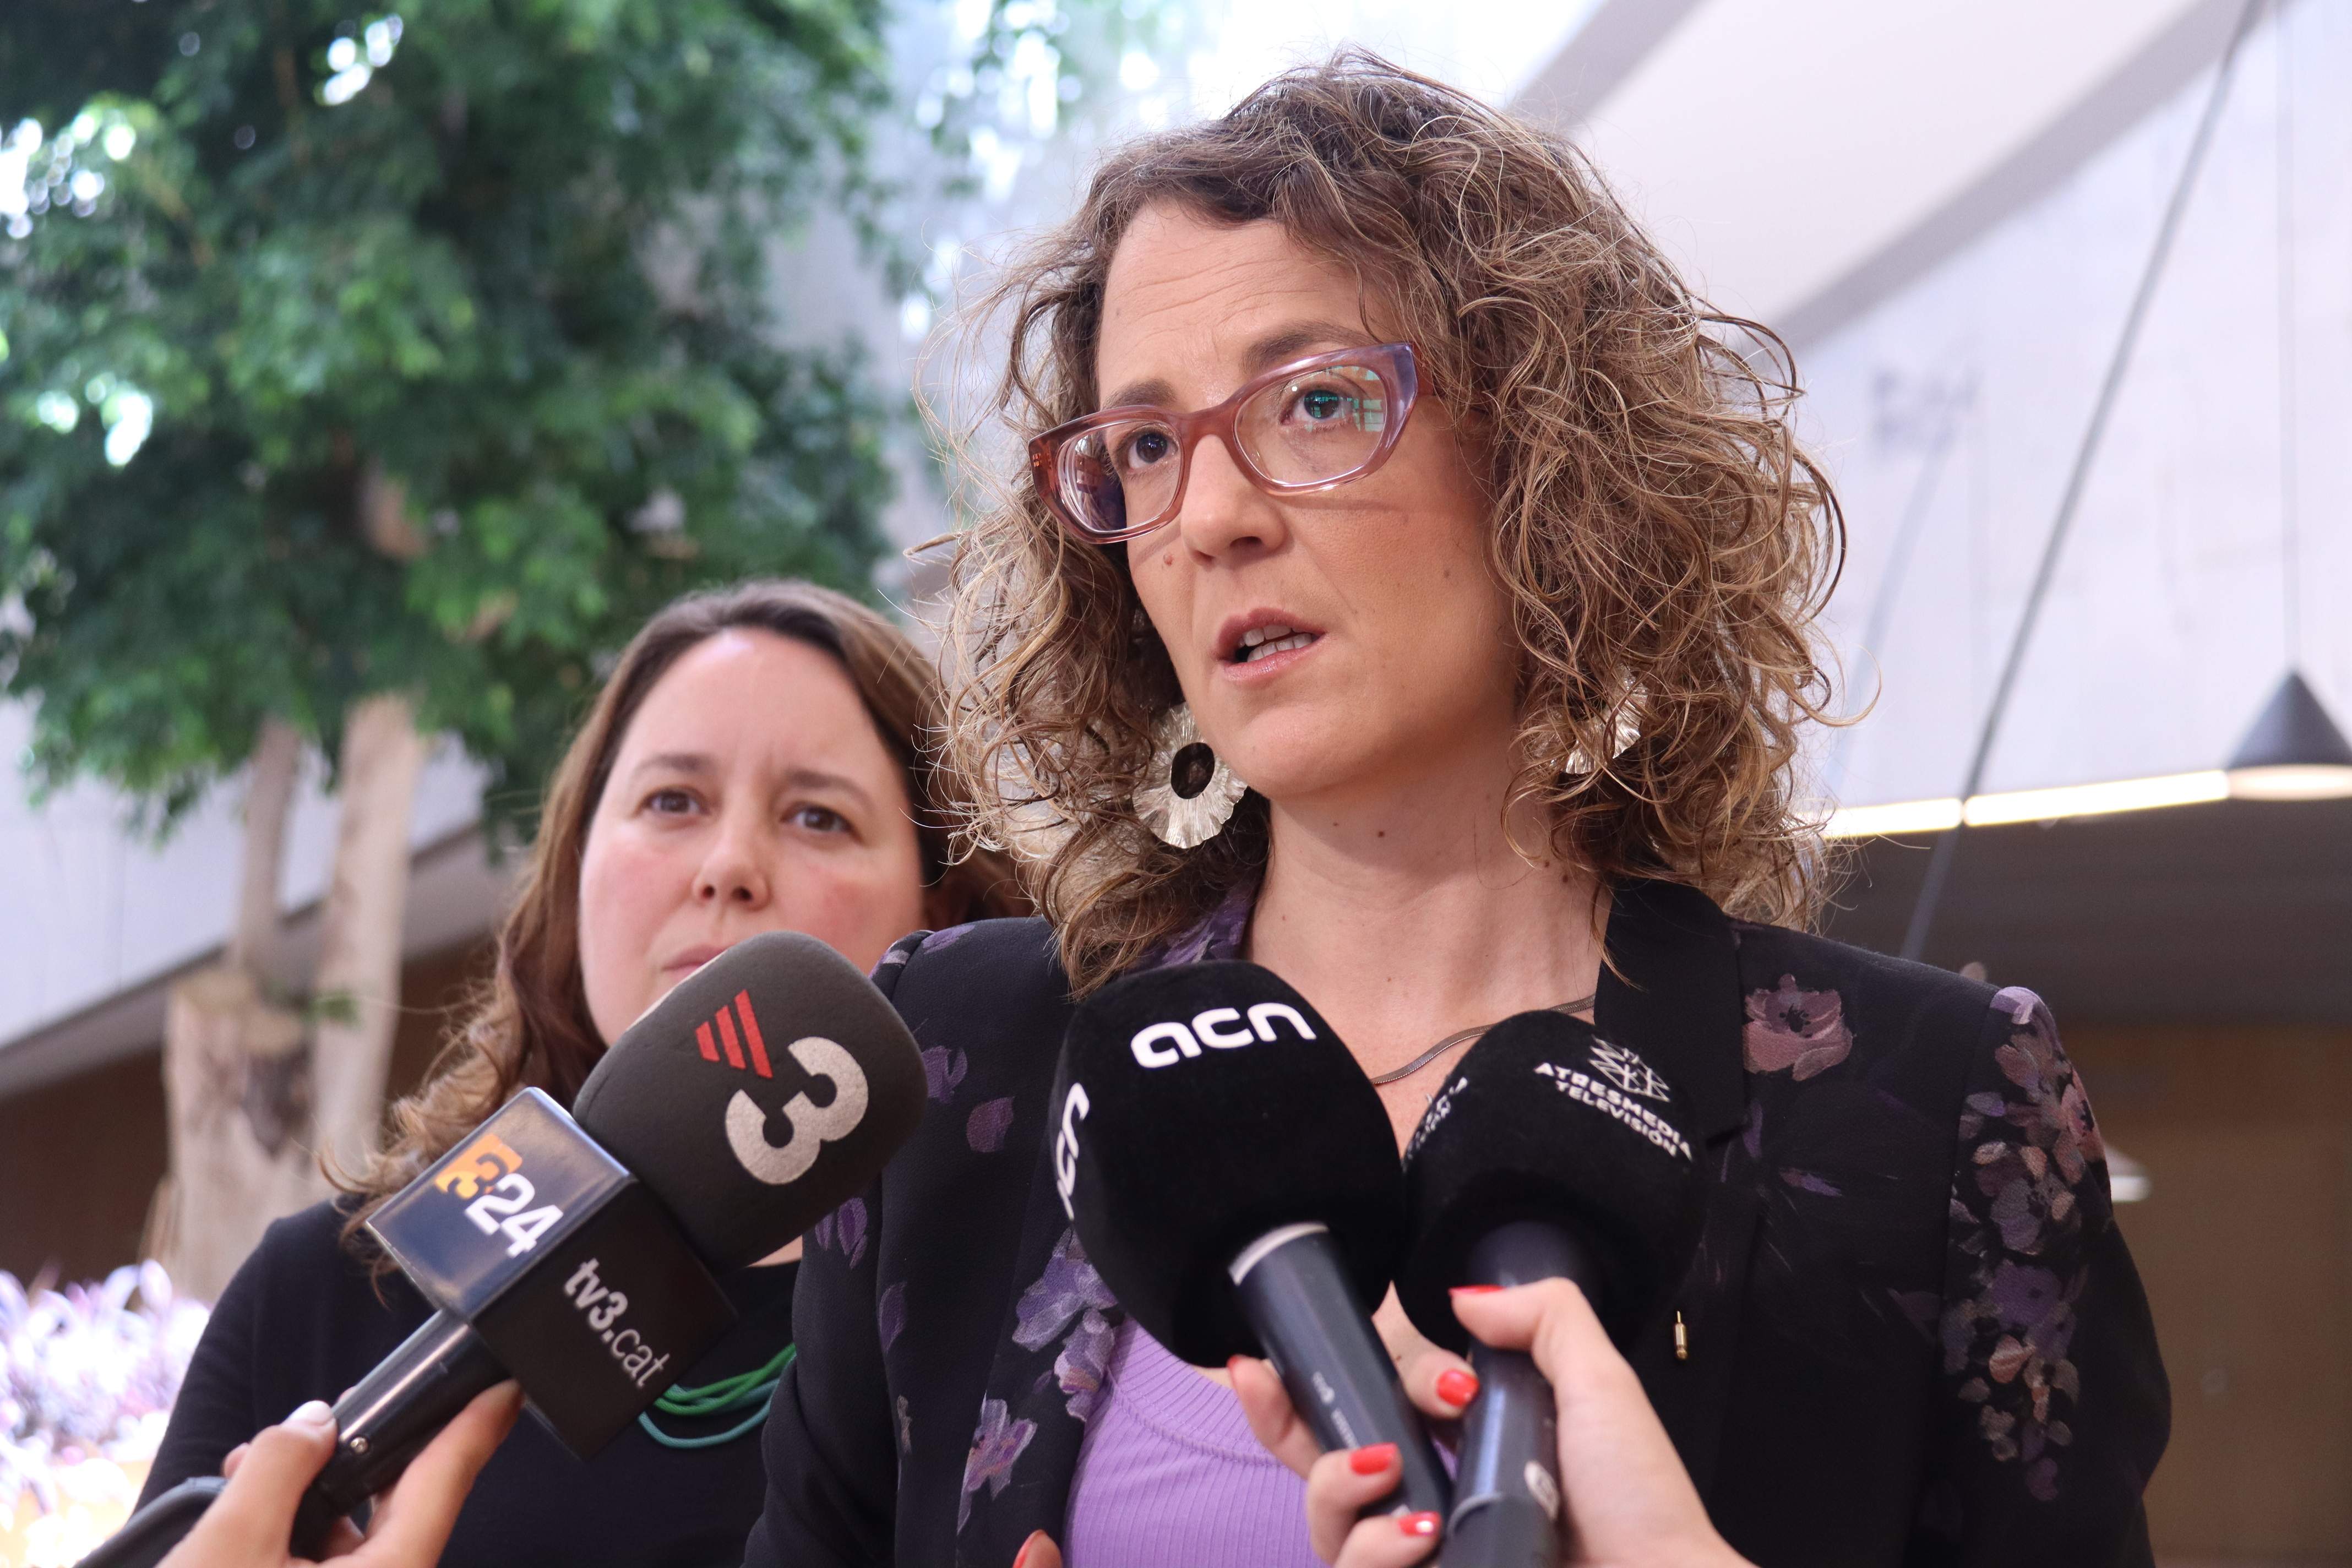 Verge condena los feminicidios de Sabadell y Salou y pide un "cambio social" para erradicarlos